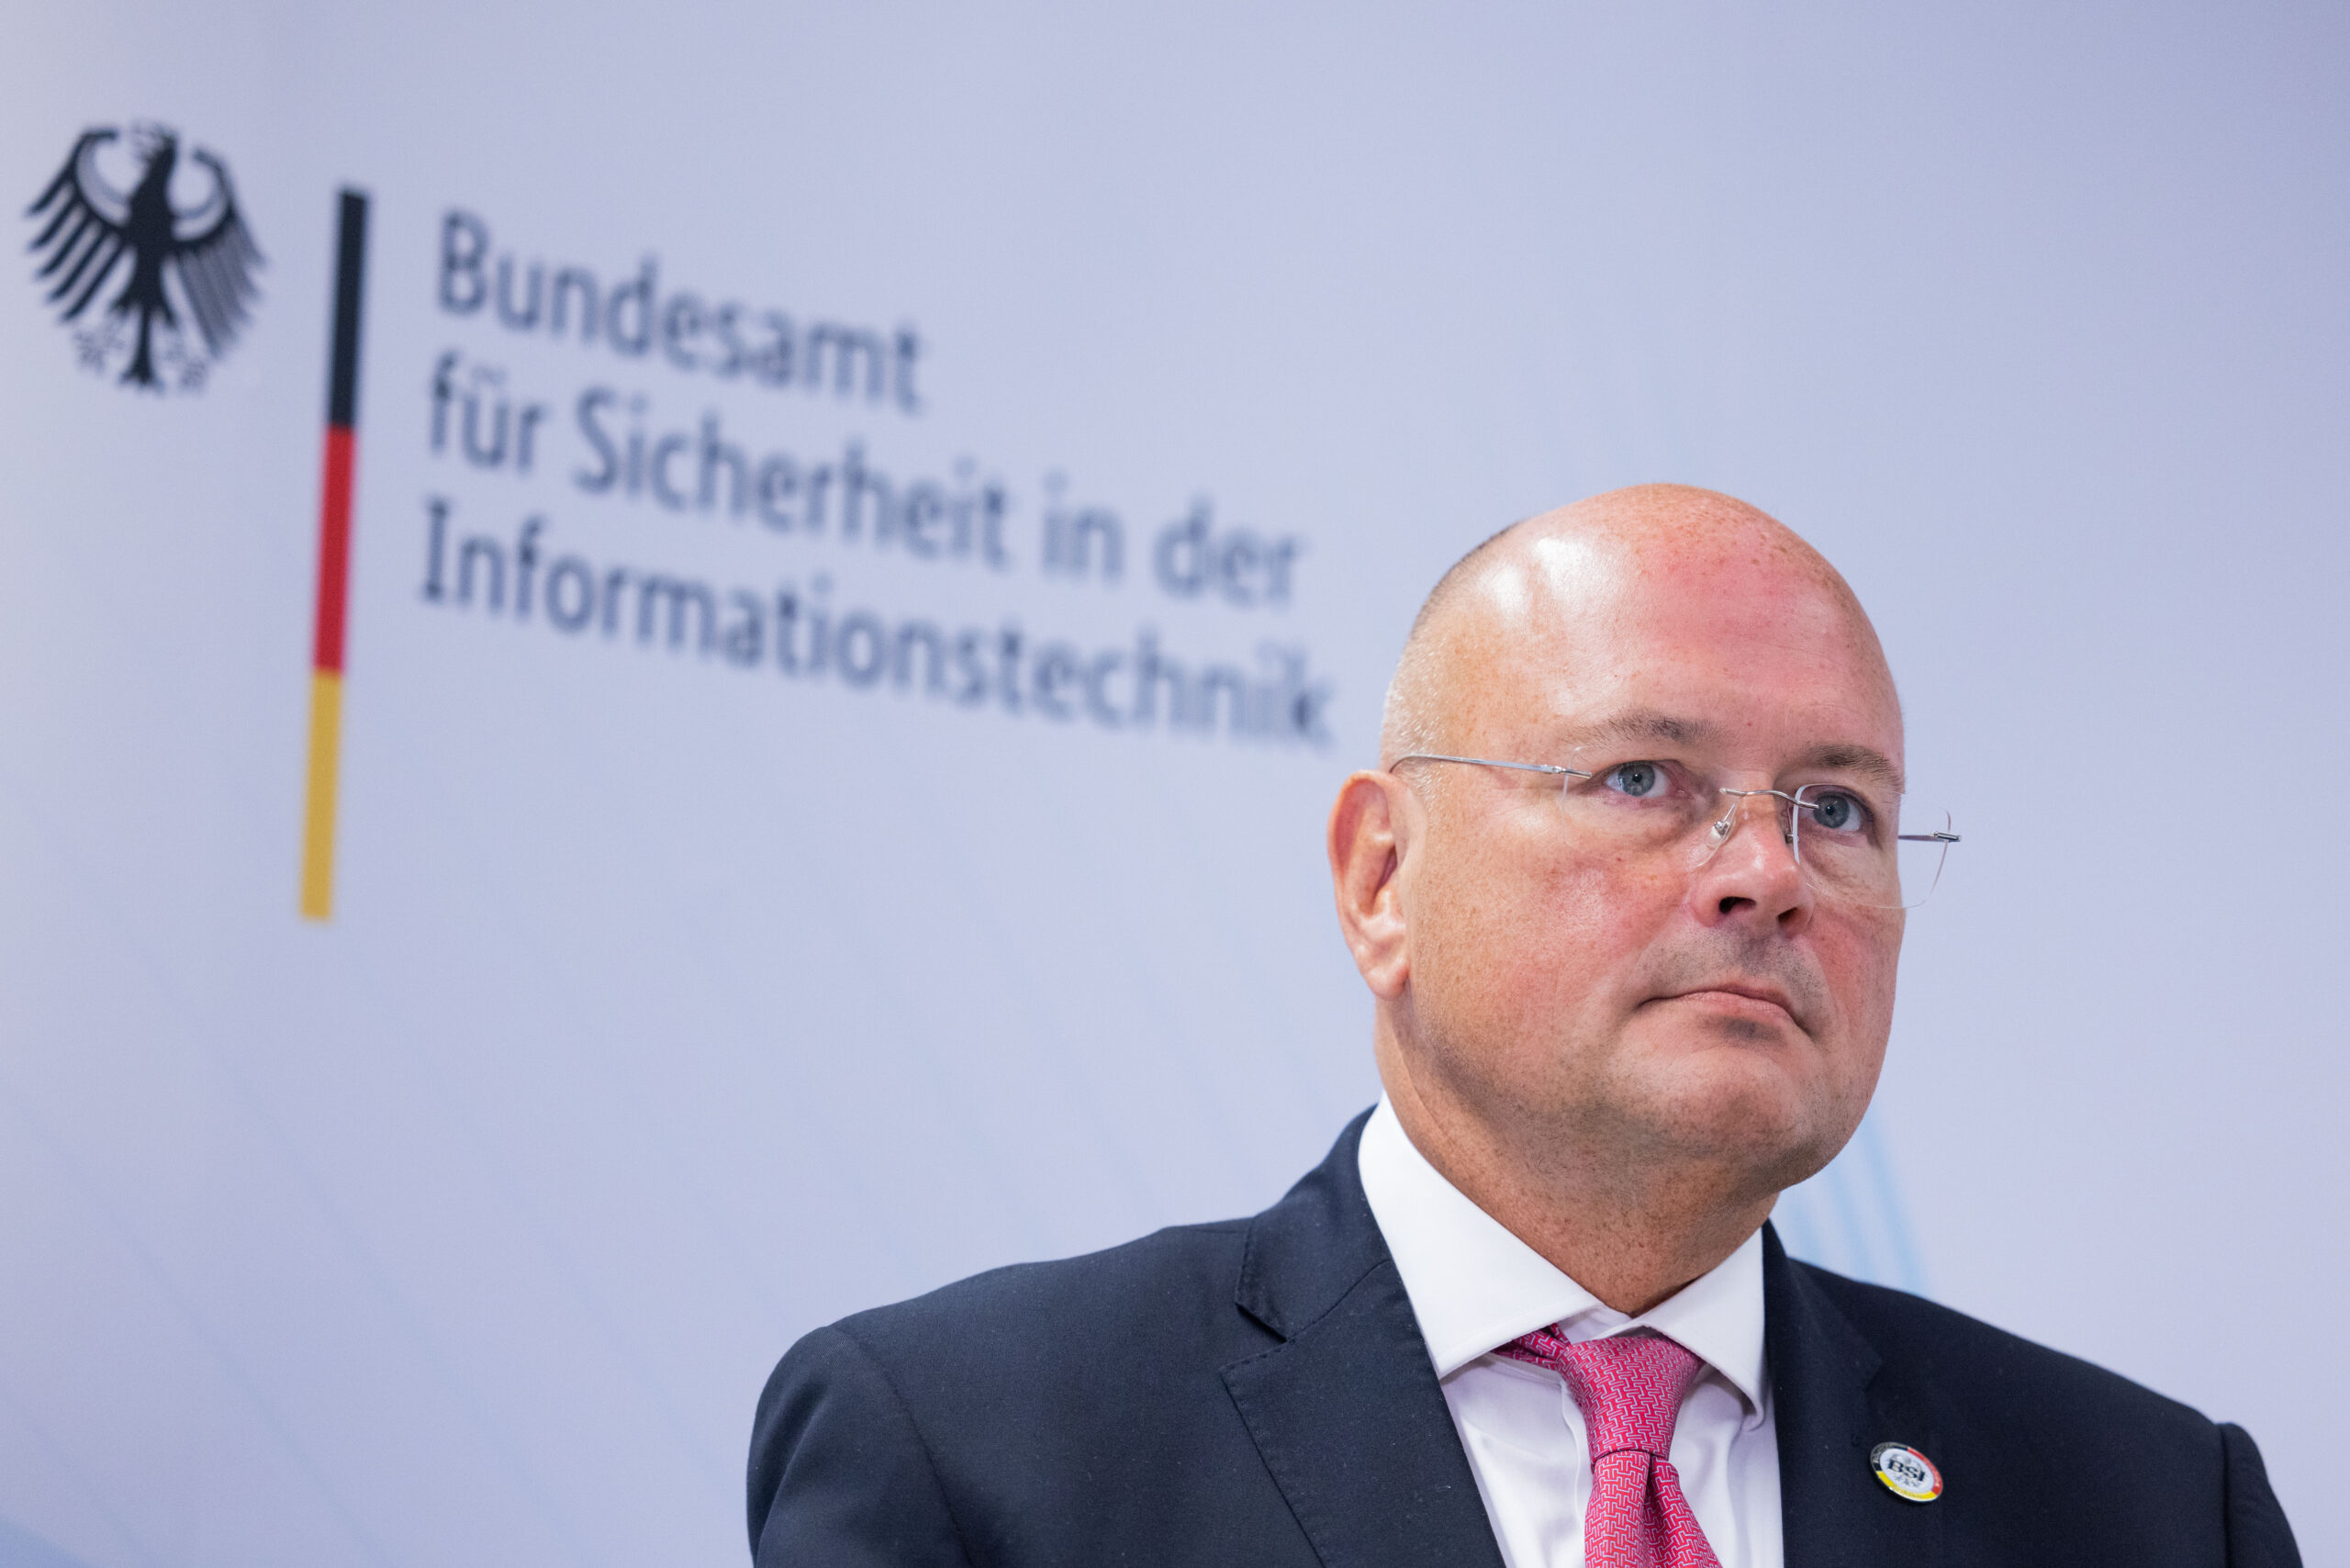 Arne Schönbohm, Präsident des Bundesamtes für Sicherheit in der Informationstechnik, wurde mit sofortiger Wirkung freigestellt.